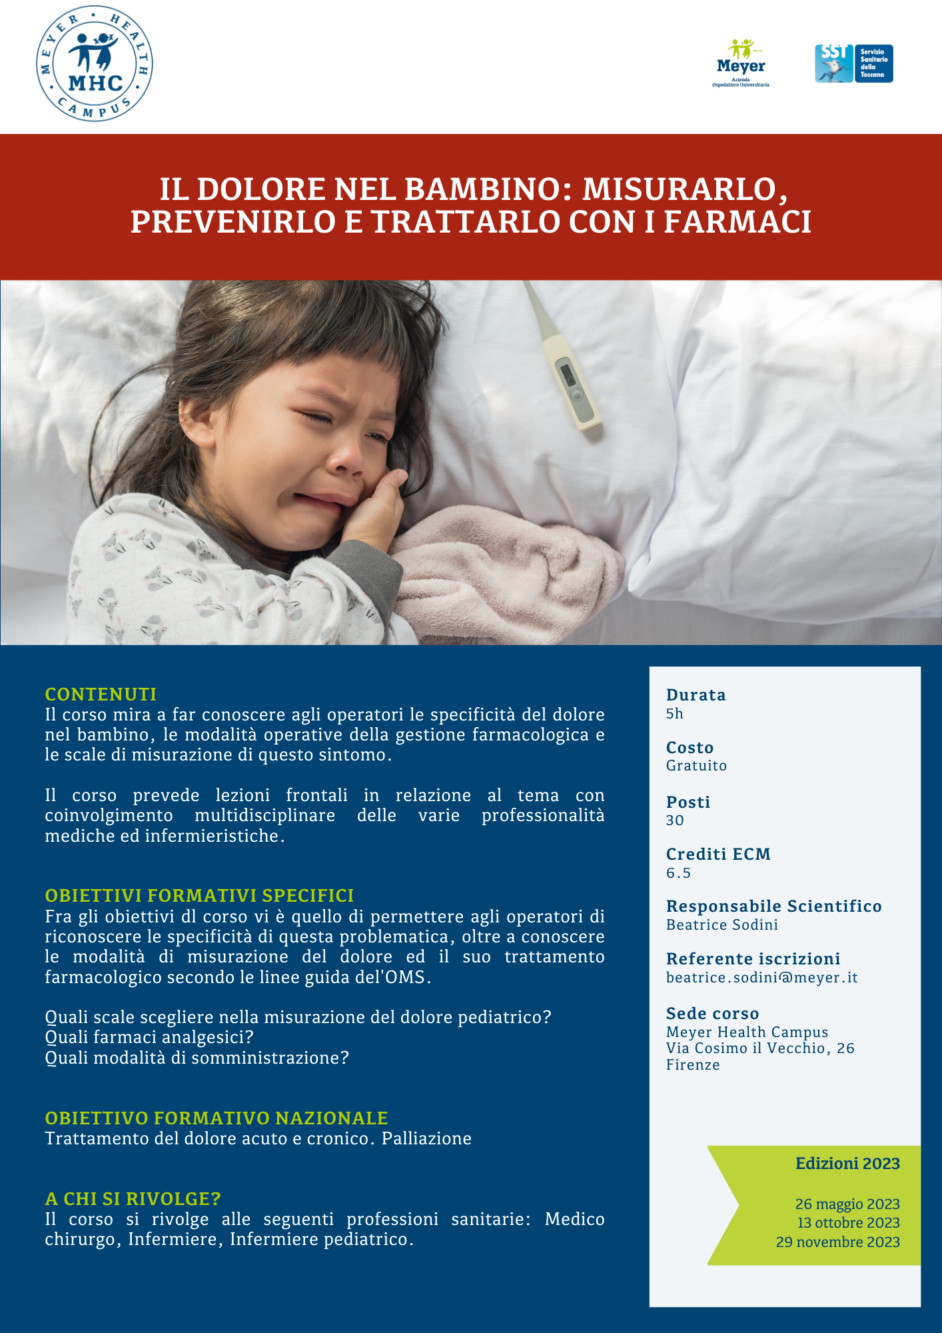 Il dolore nel bambino: misurarlo, prevenirlo e trattarlo con i farmaci (29 novembre 2023)